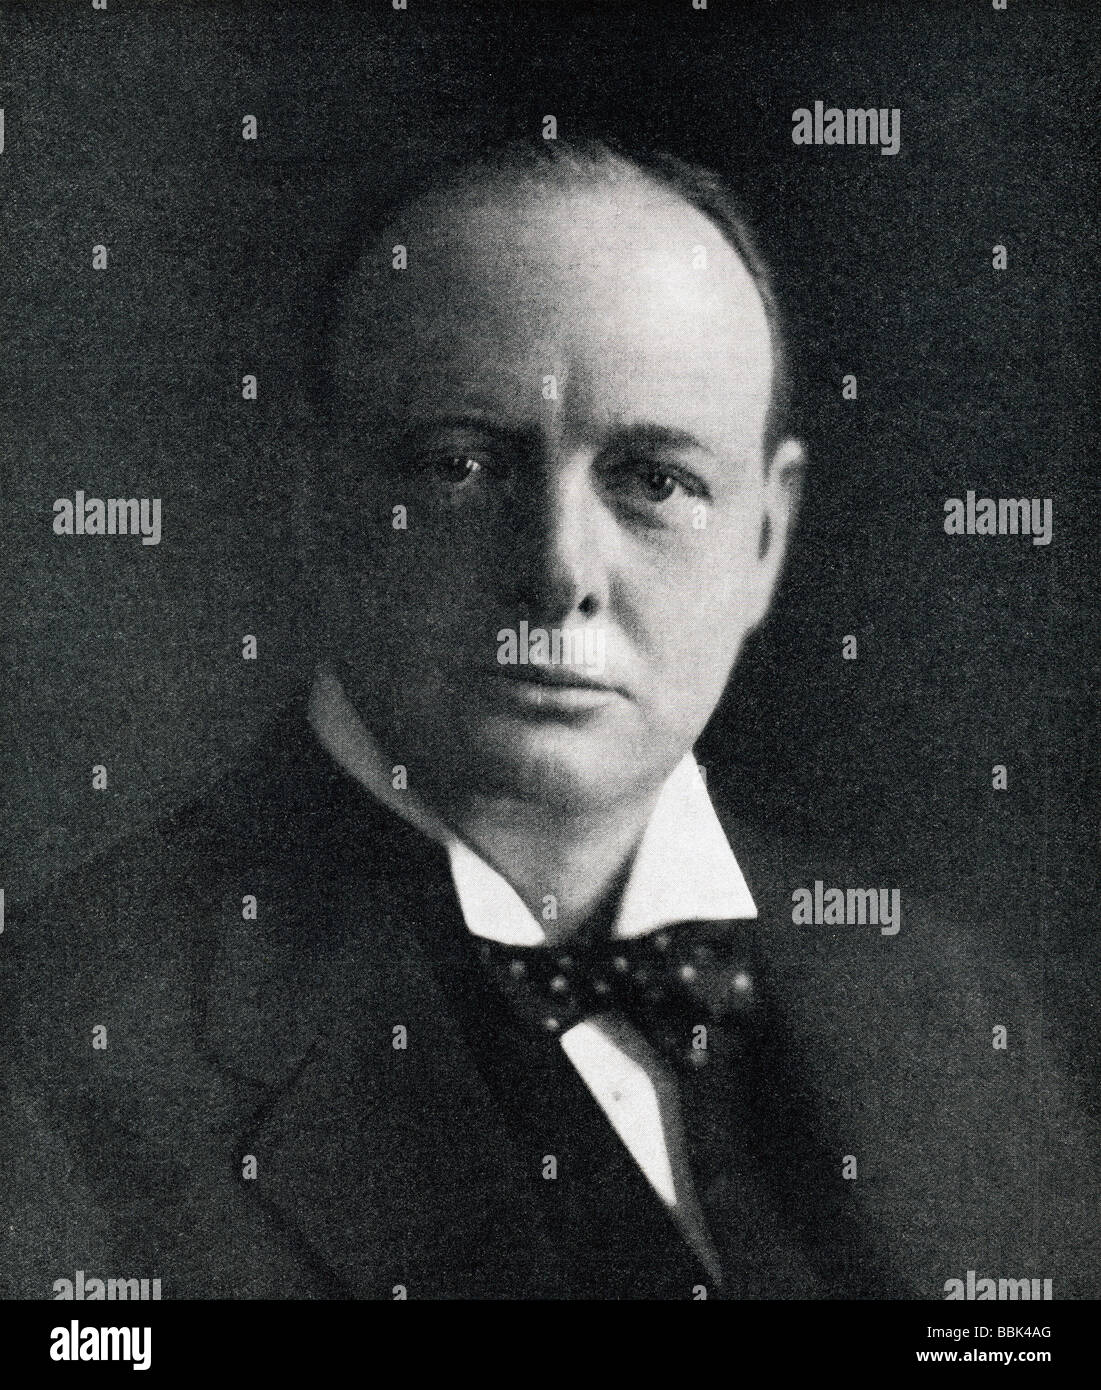 Sir Winston Leonard Spencer Churchill, 1874 - 1965. Politicien britannique et Premier ministre d'Angleterre. Banque D'Images